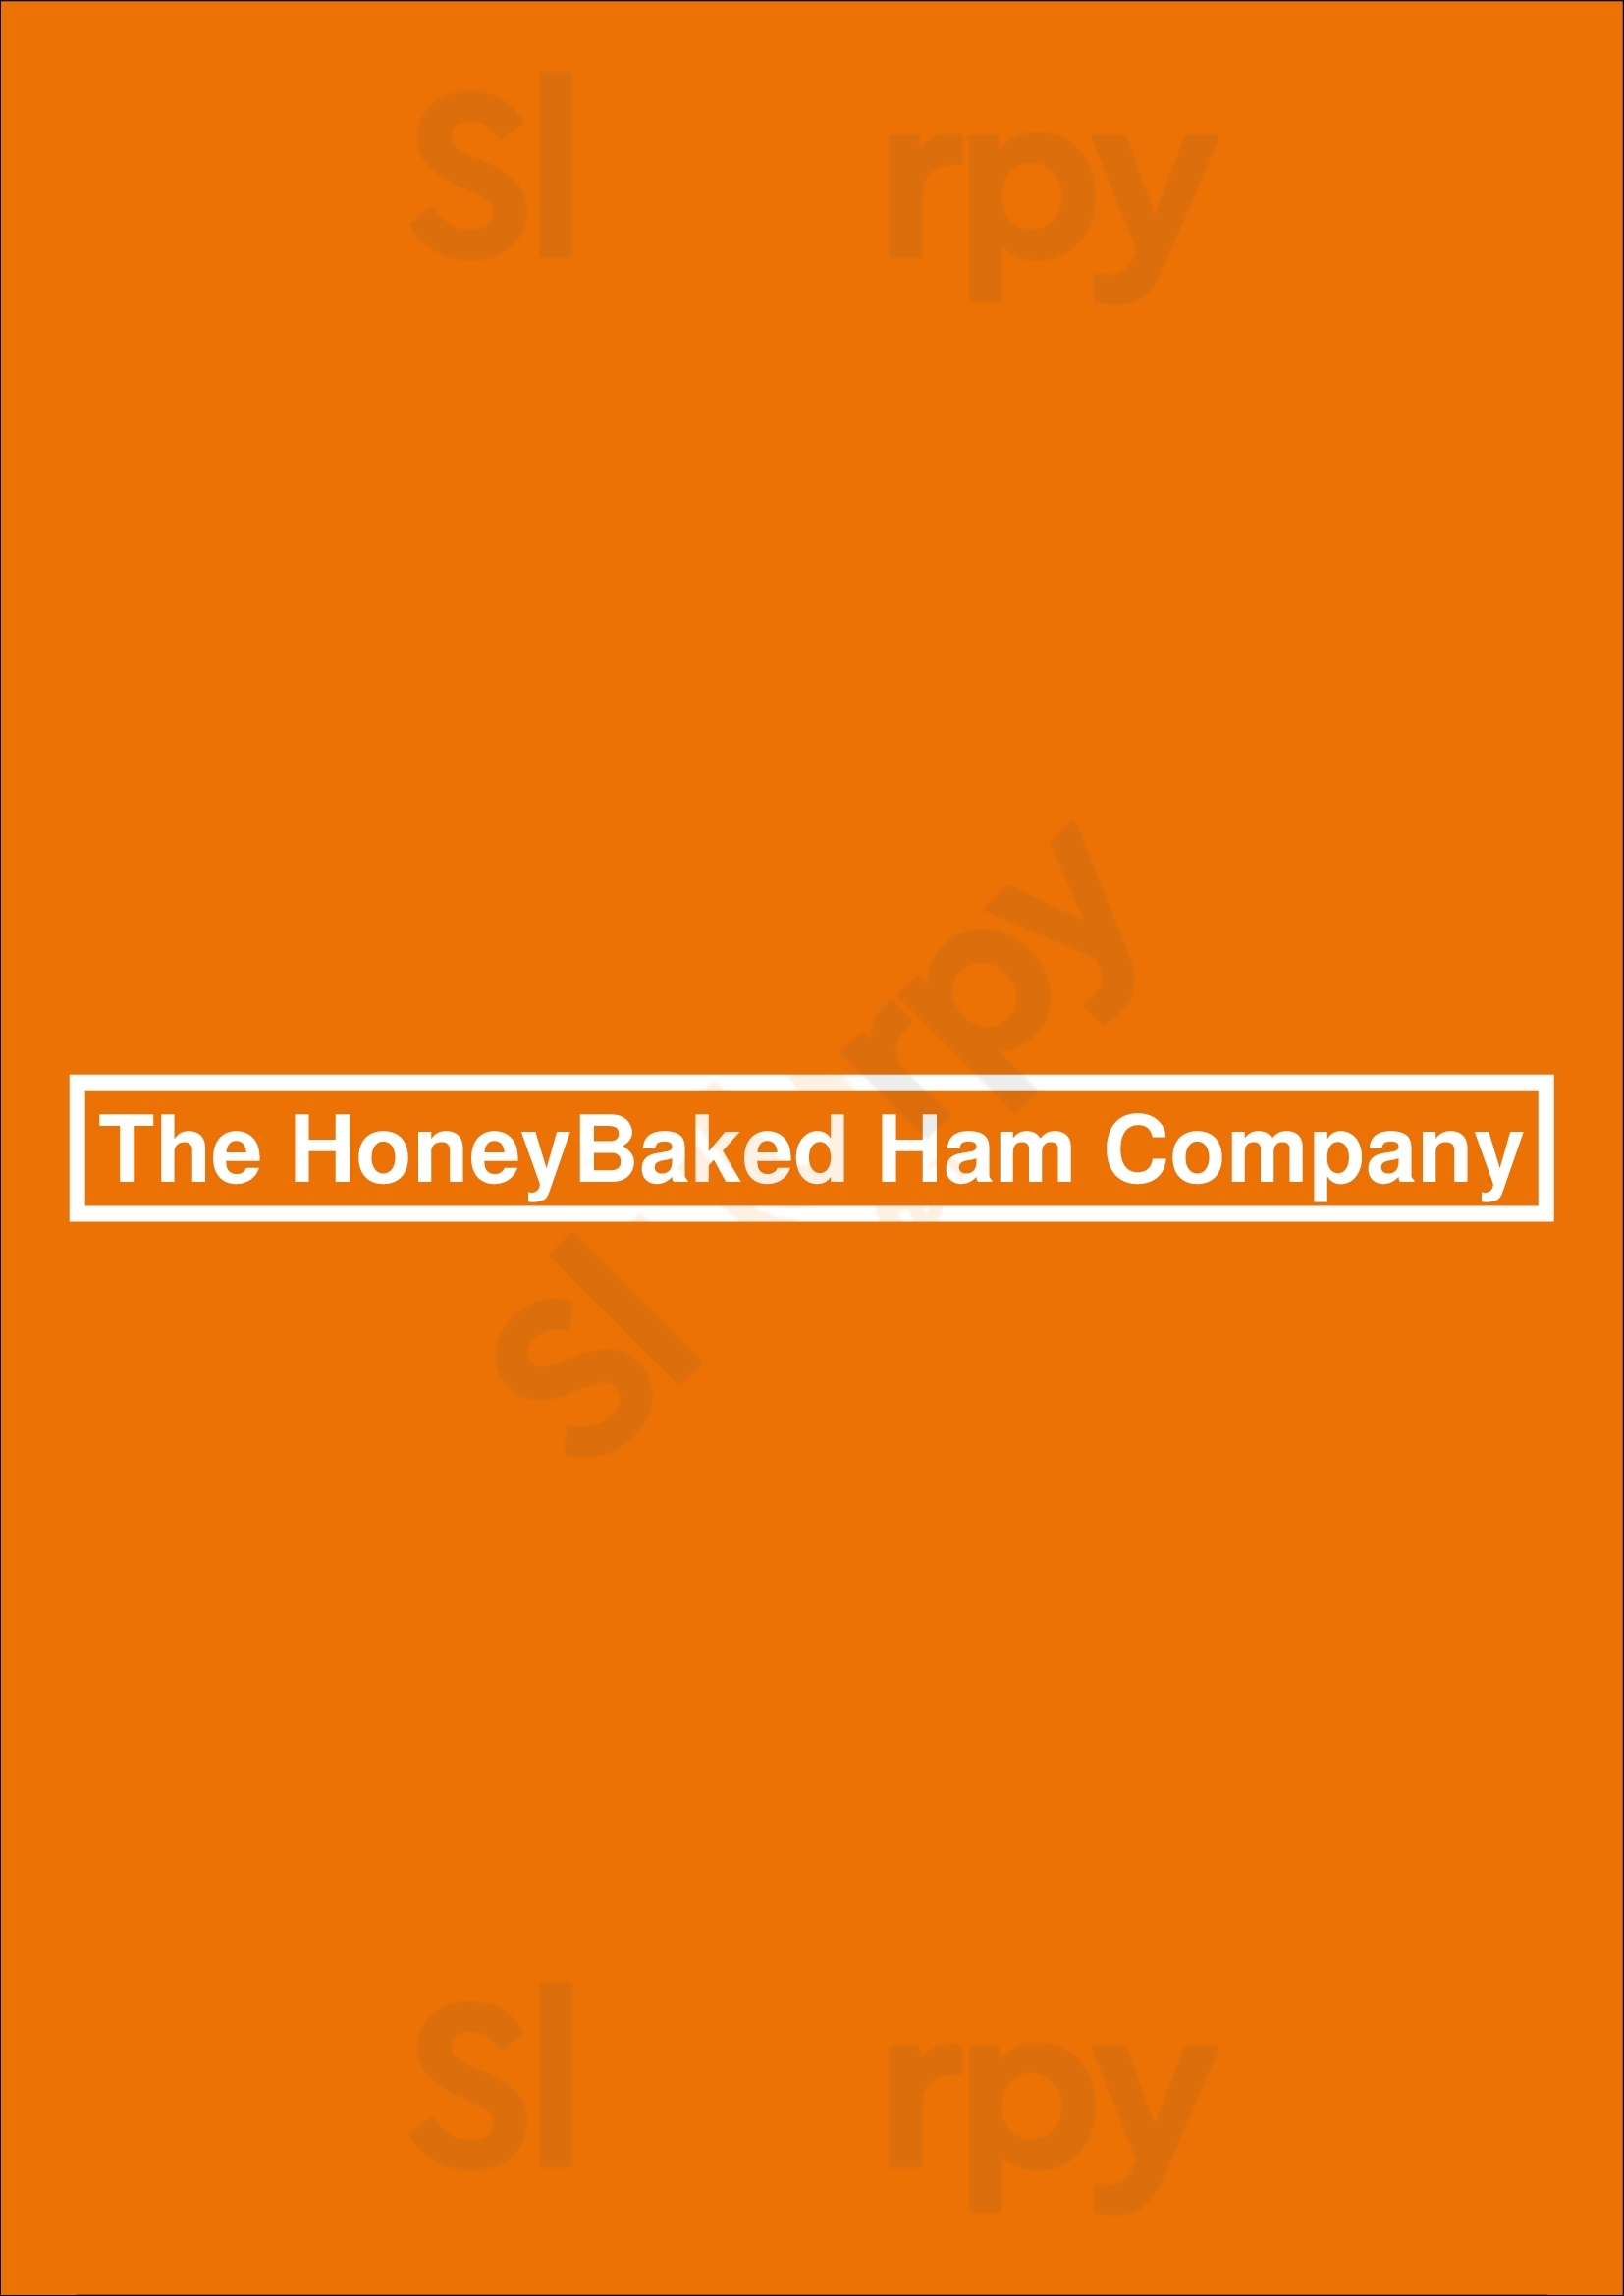 The Honey Baked Ham Company Houston Menu - 1